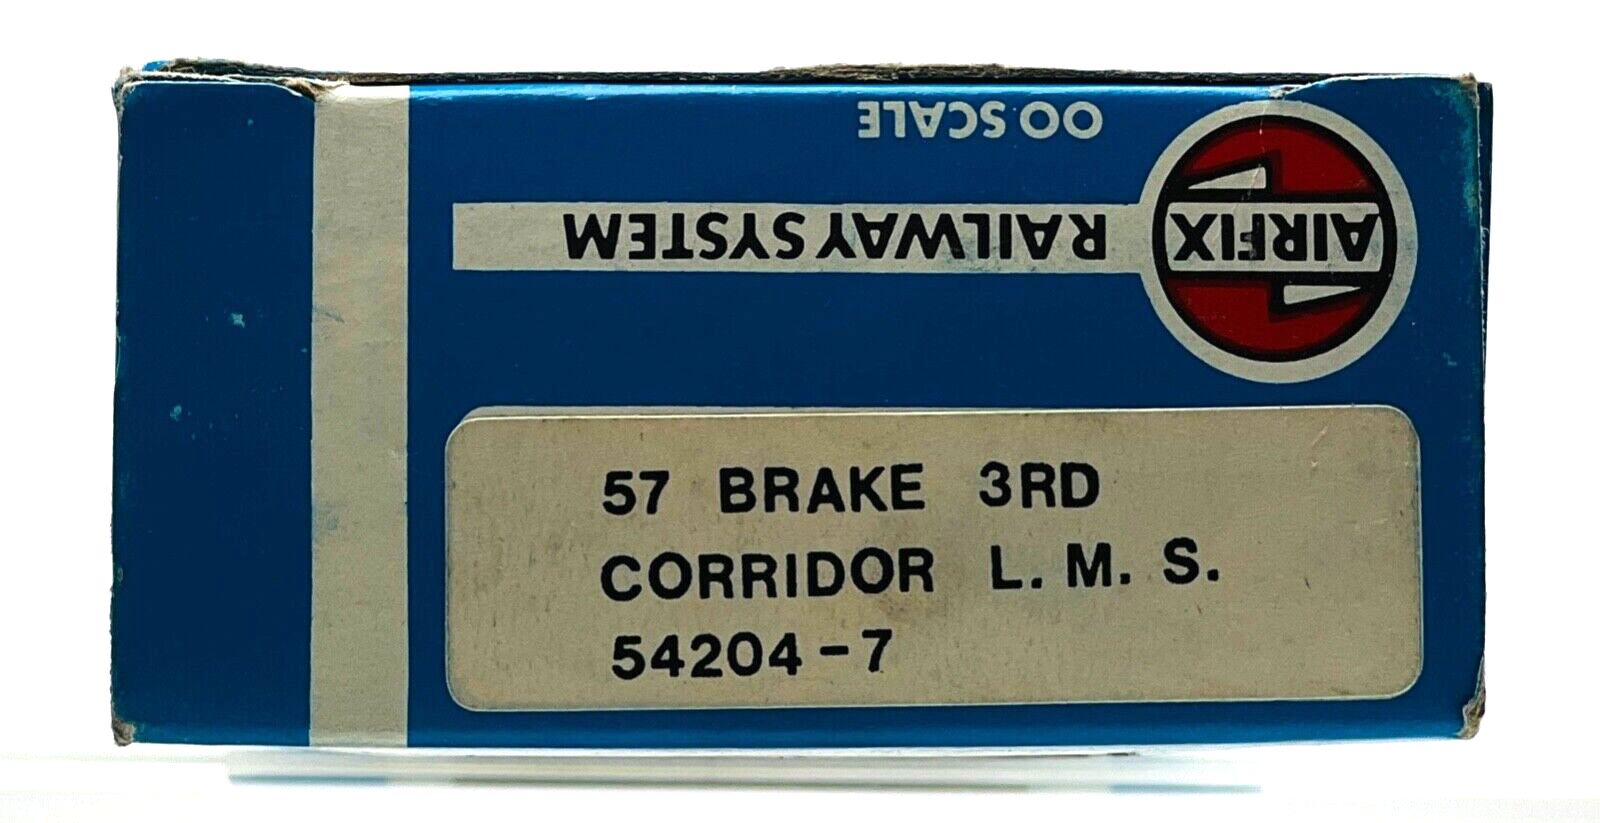 AIRFIX 00 GAUGE - 54204-7 - 57' BRAKE 3RD CORRIDOR LMS COACH - BOXED